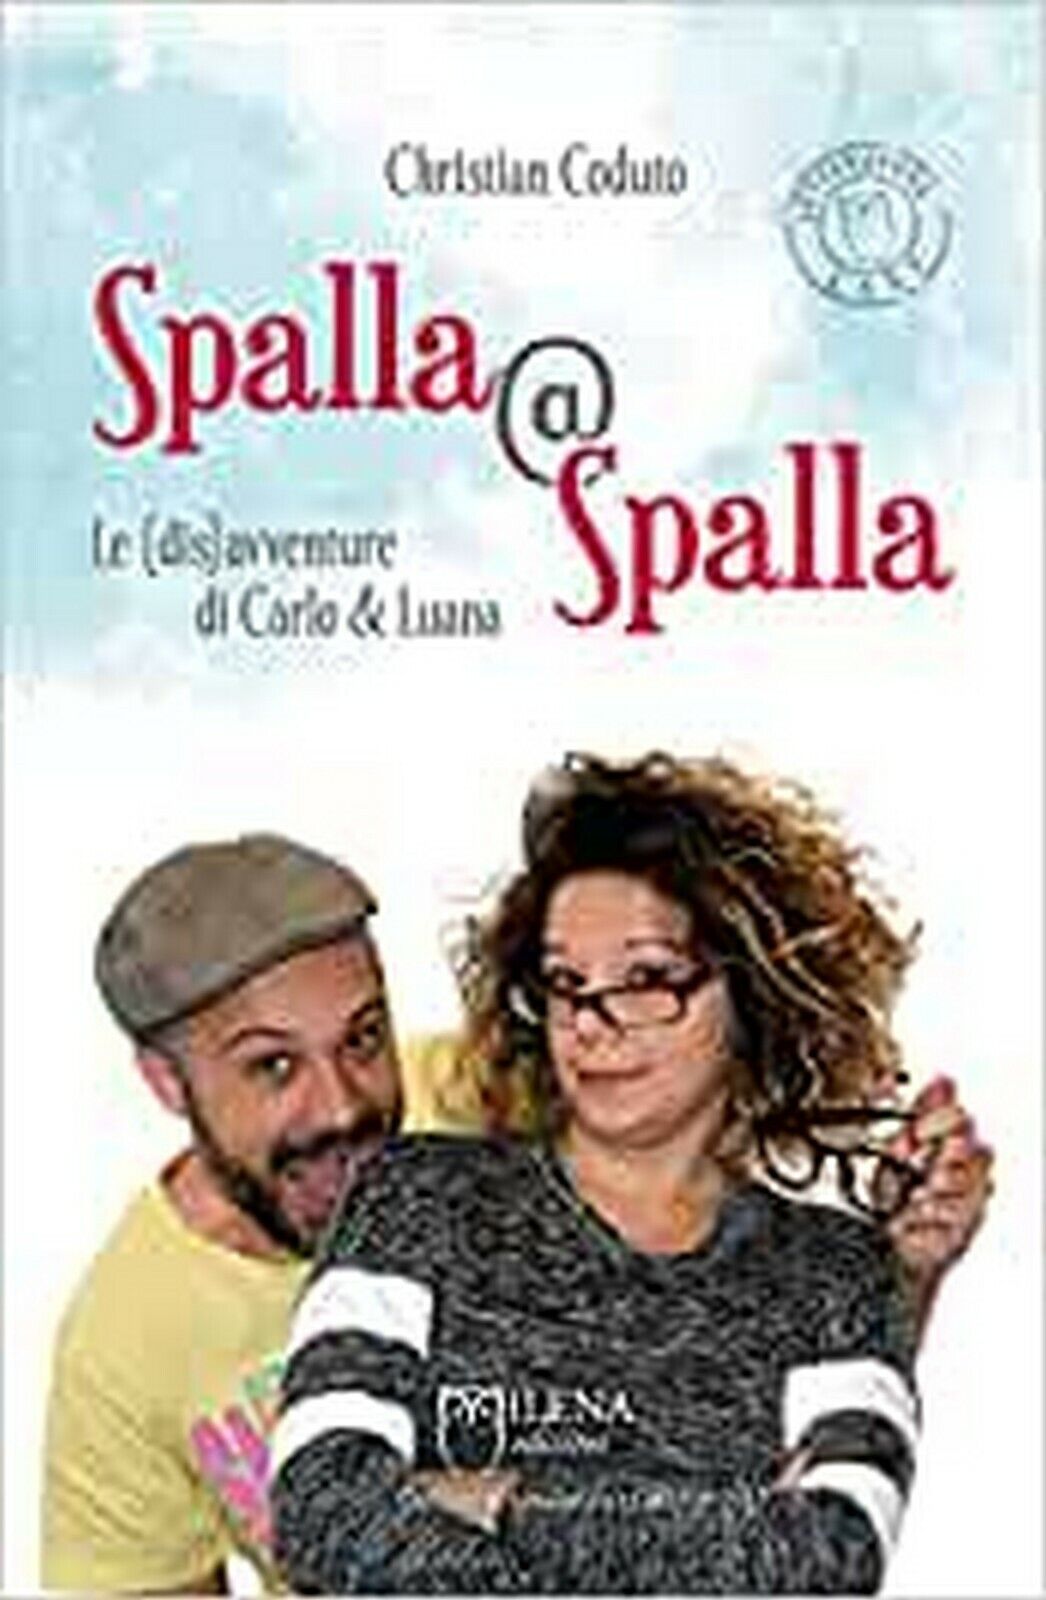 Spalla@Spalla. Le(dis)avventure di Carlo e Luana  di Christian Coduto,  Officina libro usato